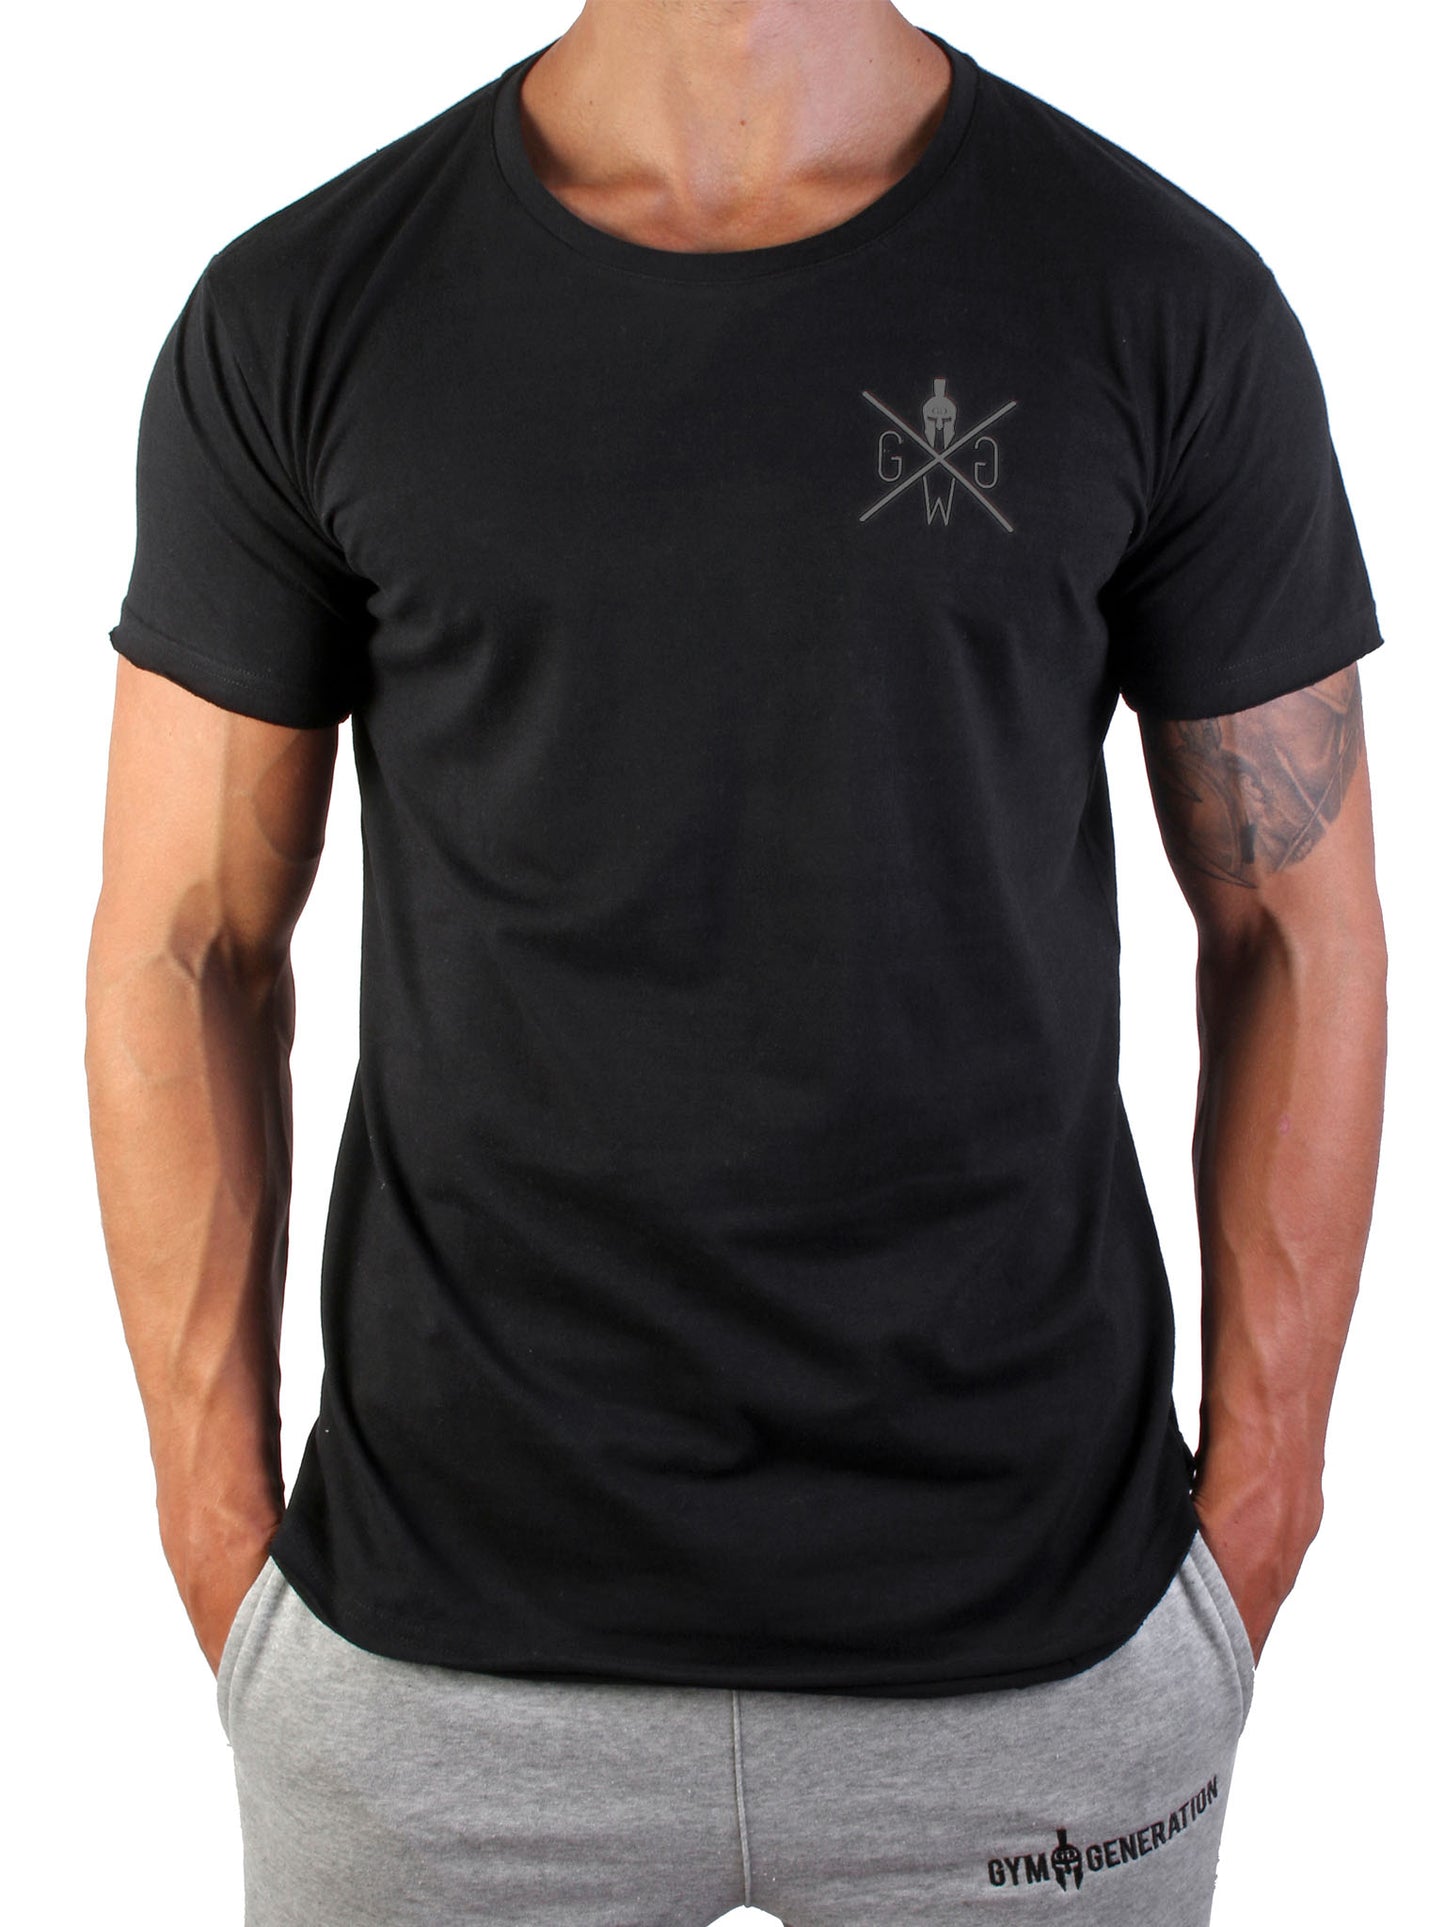 "No Pain No Gain" T-Shirt von Gym Generation, ideal für motivierte Fitness-Enthusiasten.